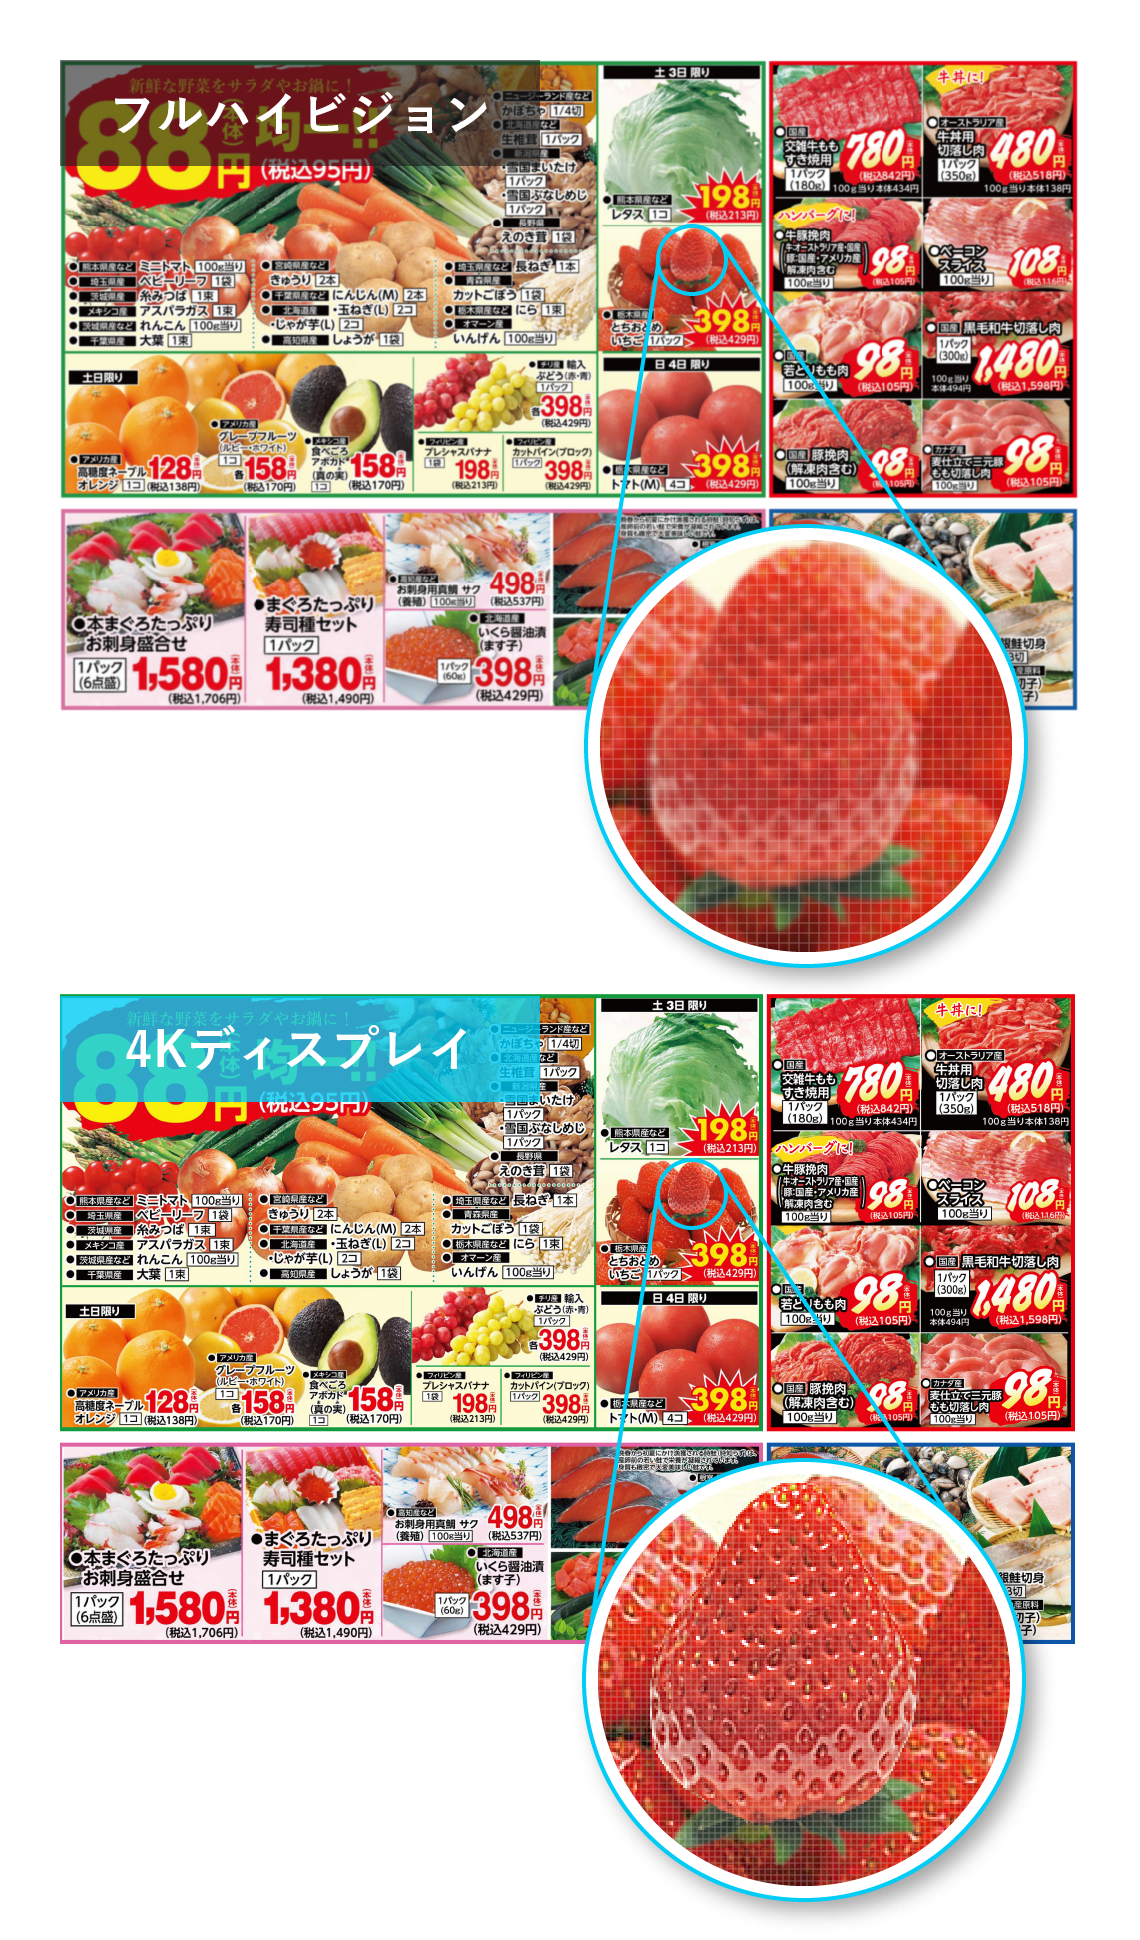 フルハイビジョンと4Kのスーパーマーケットチラシ映像、イチゴが4Kの方がきれいに見える画像比較イメージ